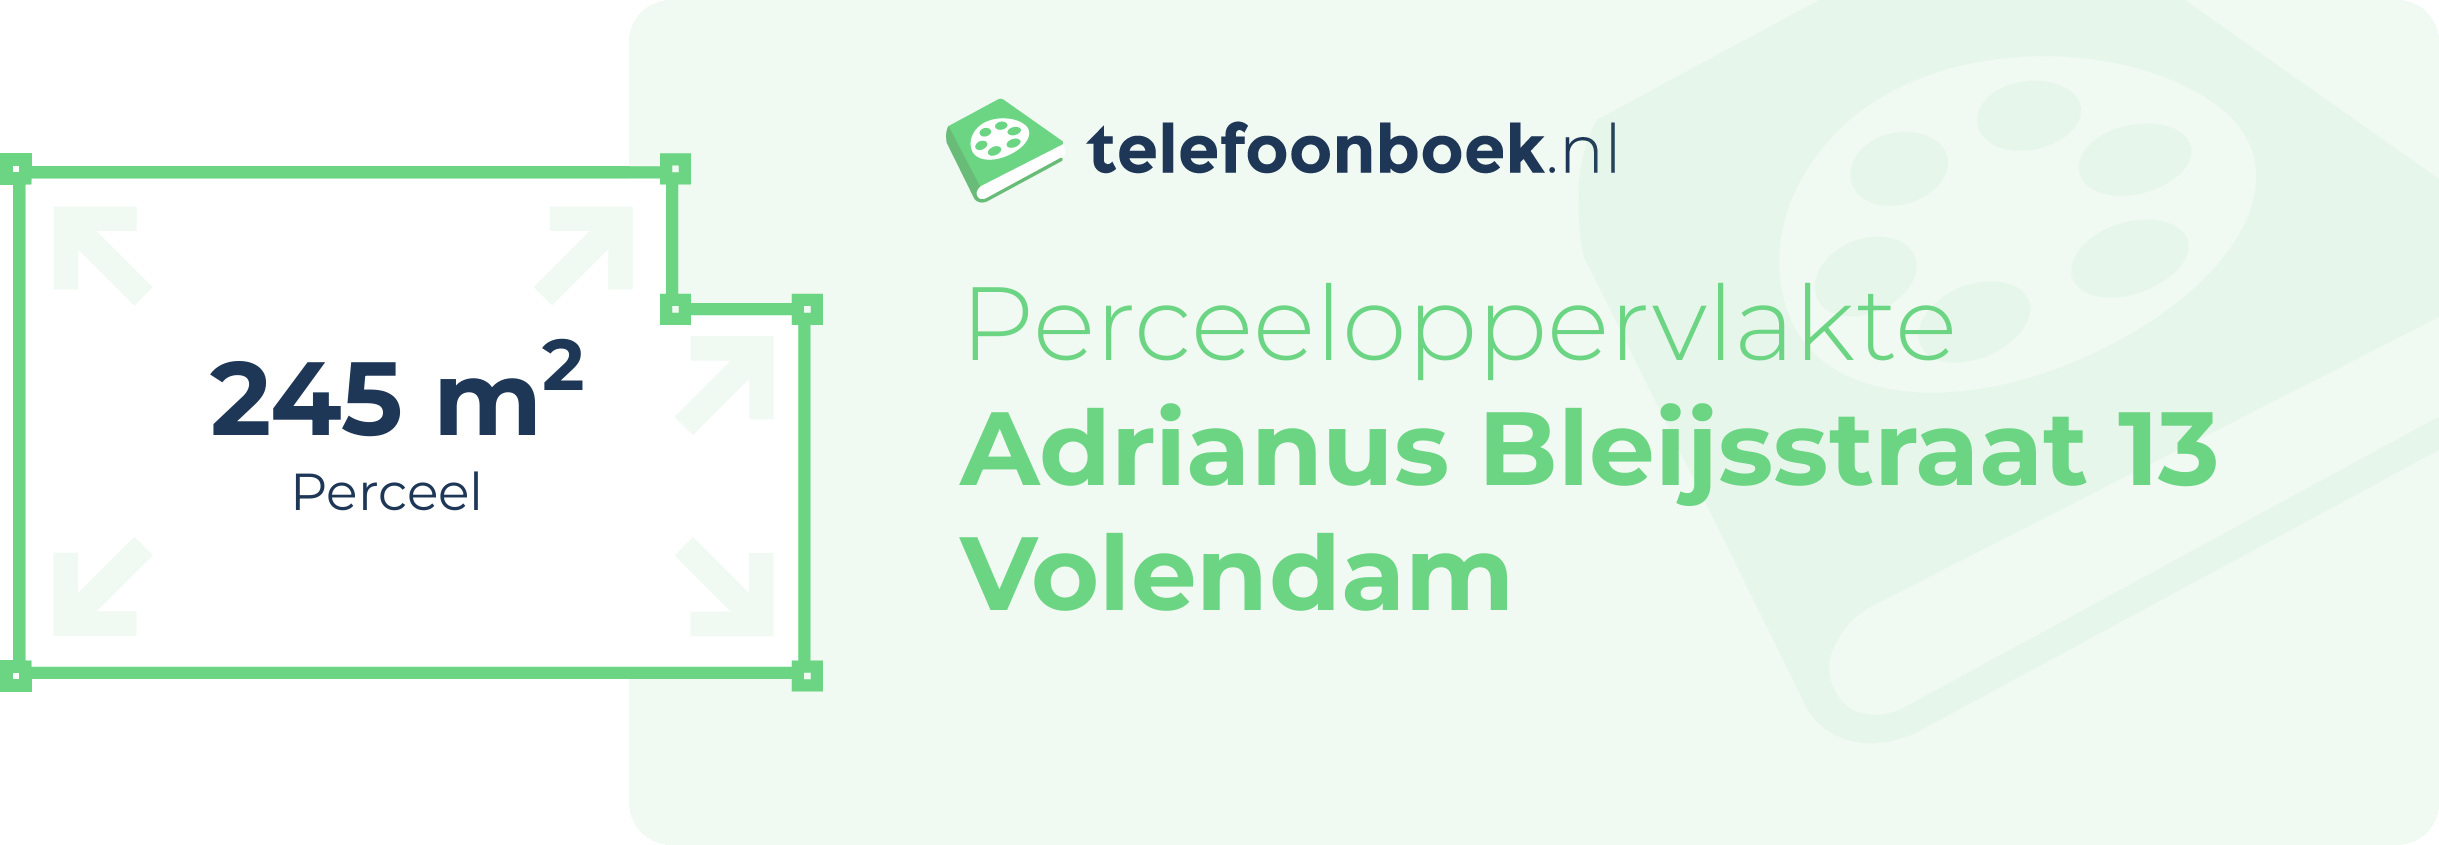 Perceeloppervlakte Adrianus Bleijsstraat 13 Volendam